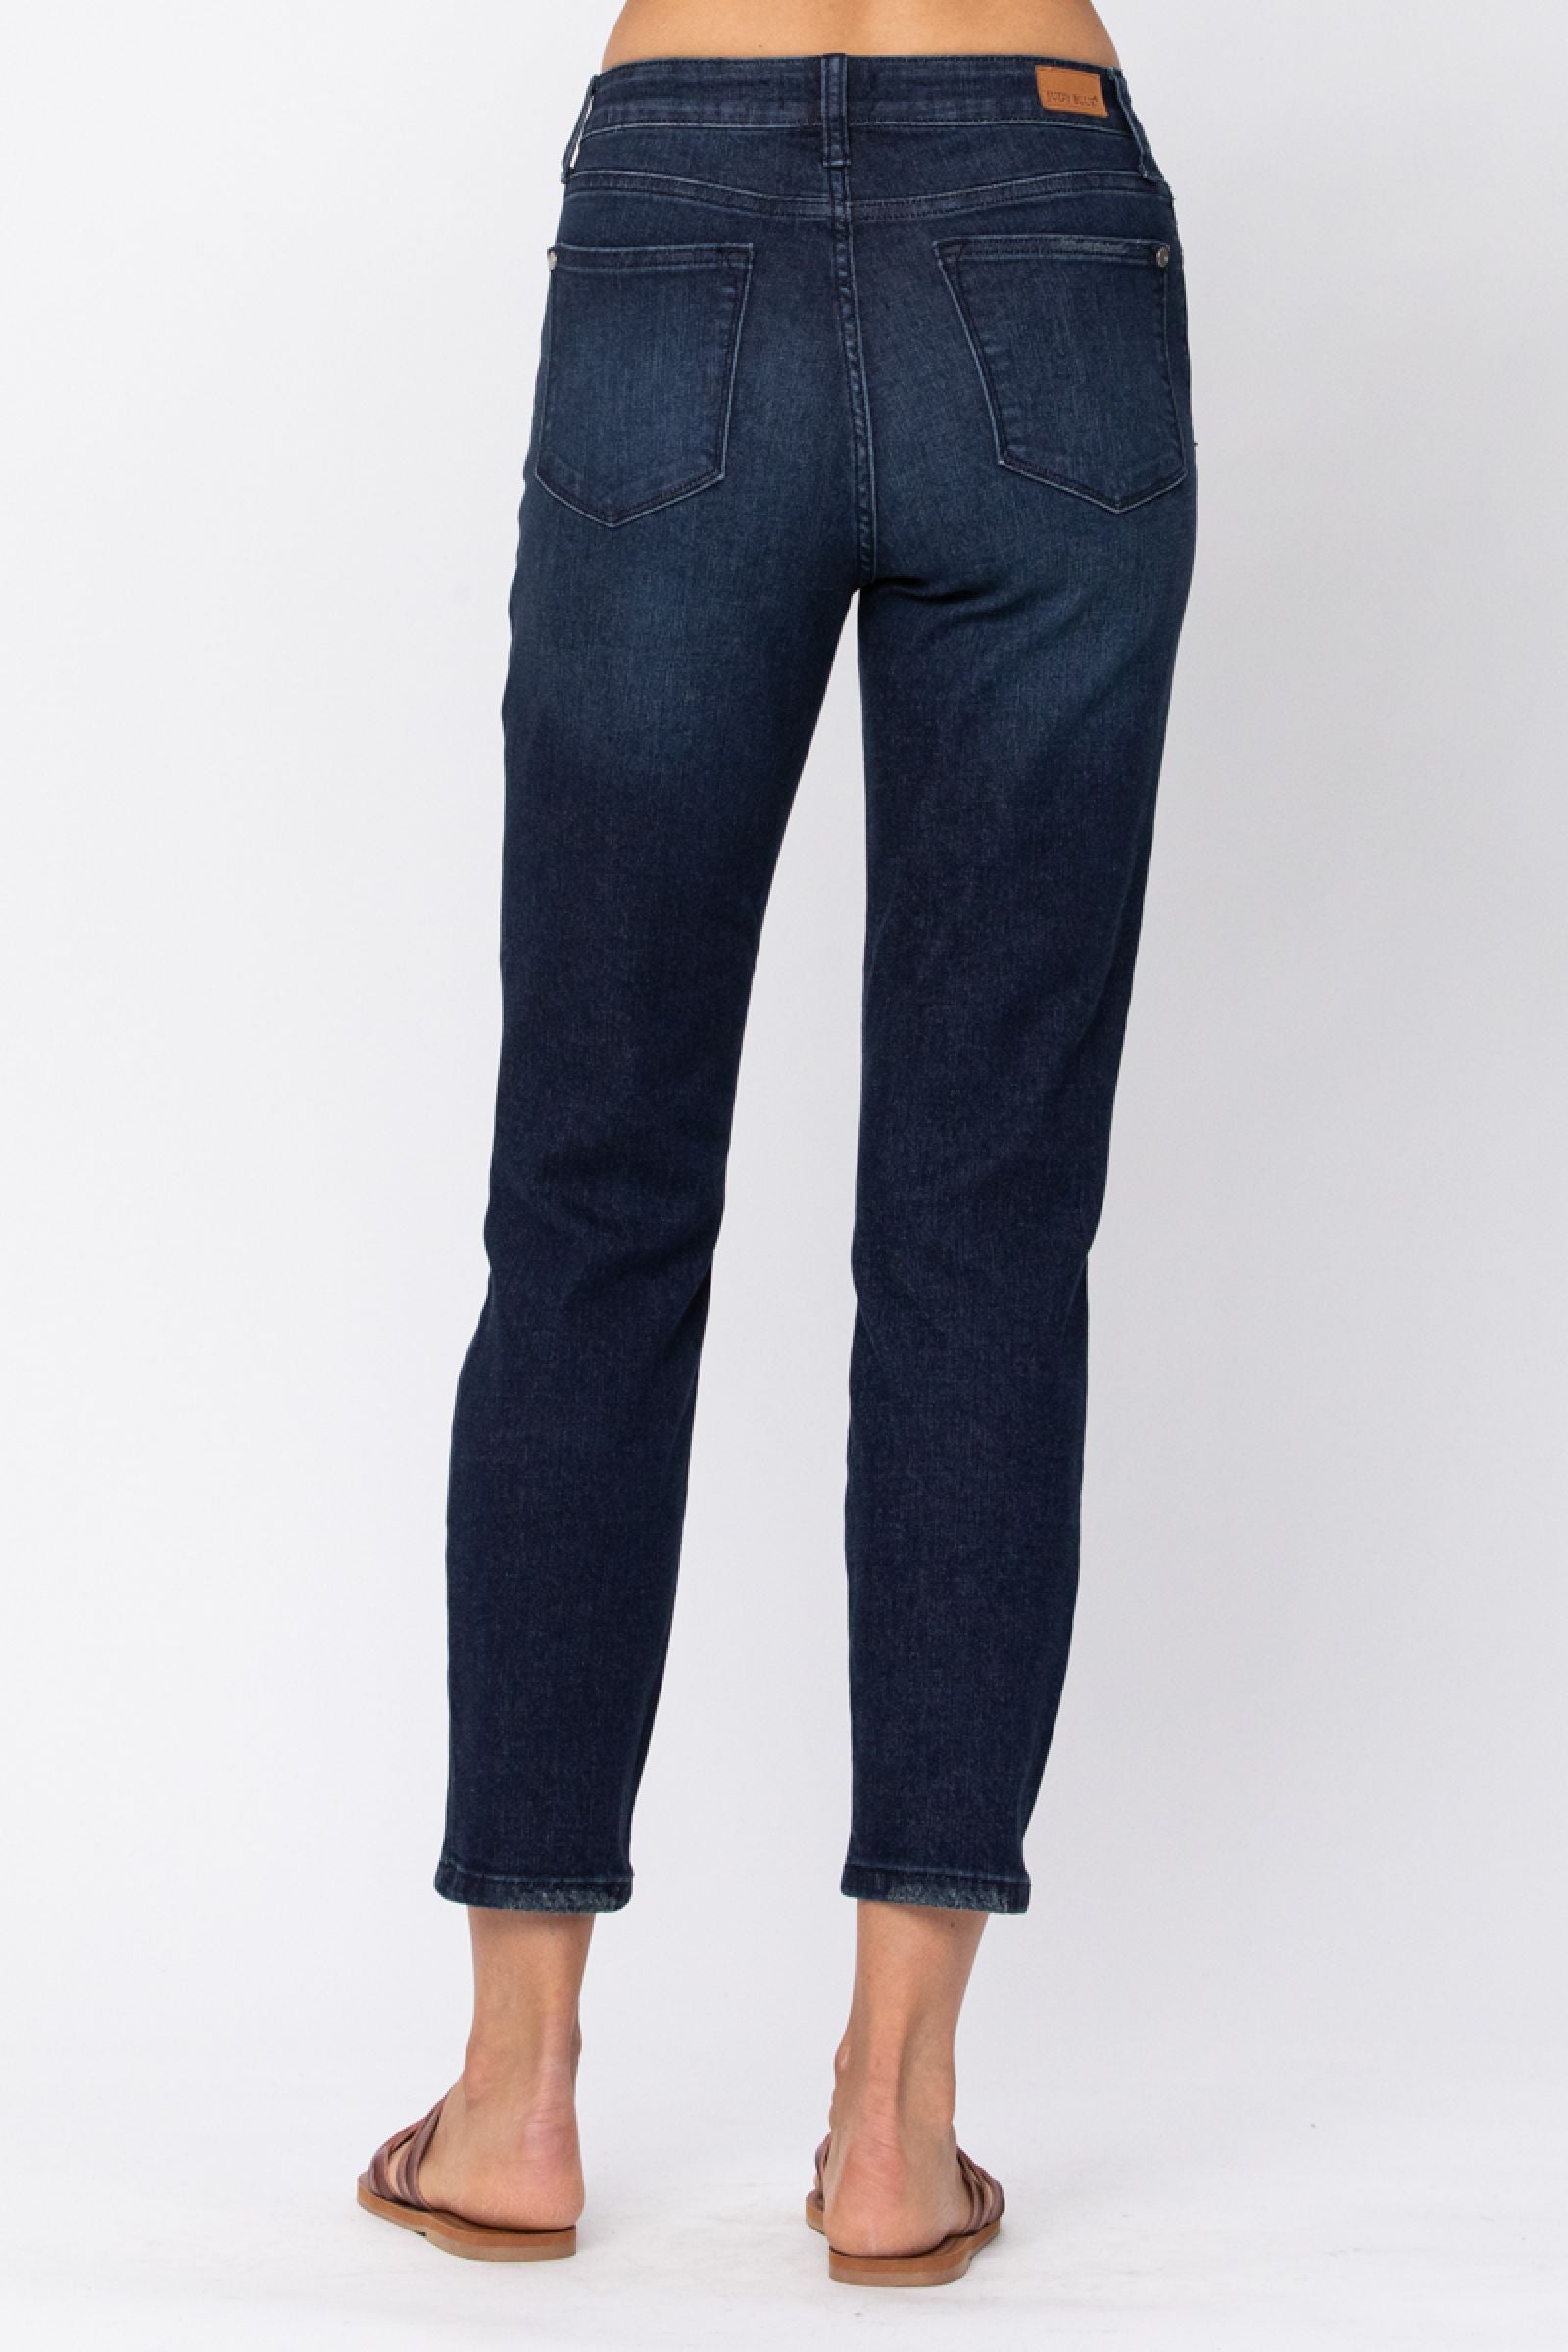 Judy Blue Dark Wash Boyfriend Jeans - Style 8114 Online Exclusive ...